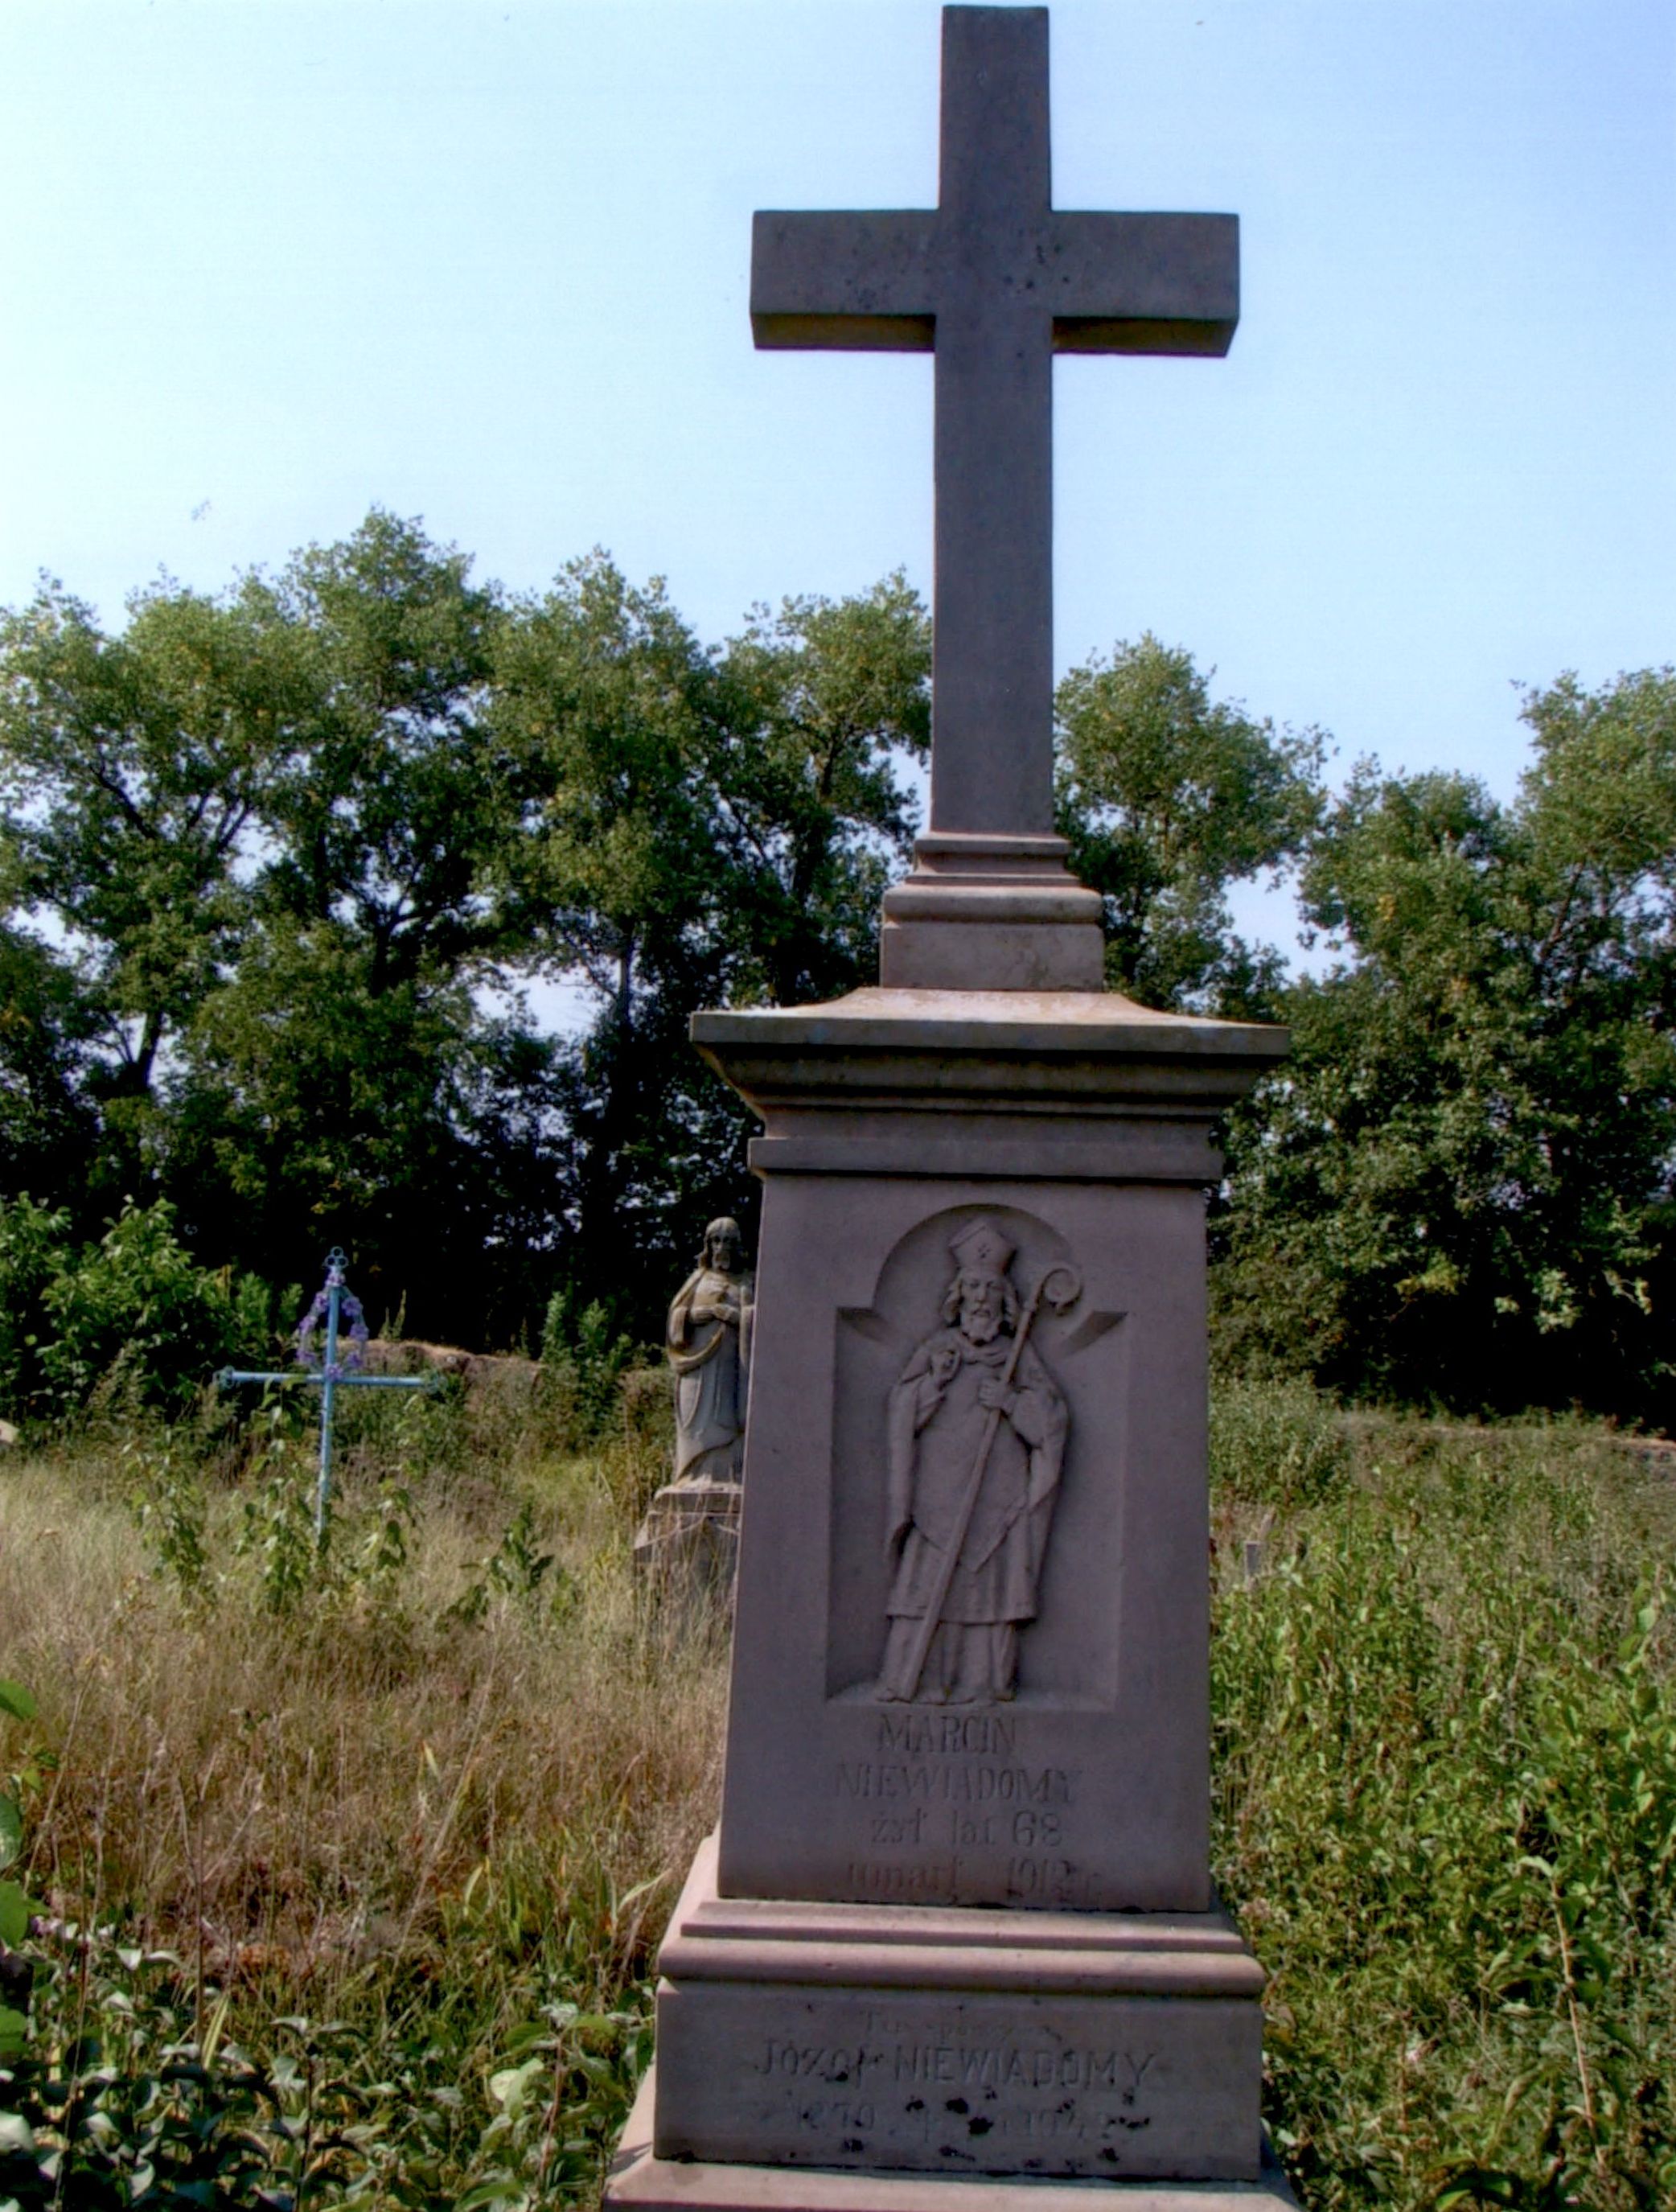 Tombstone of Józef and Marcin Niewiadomski, cemetery in Strusowo